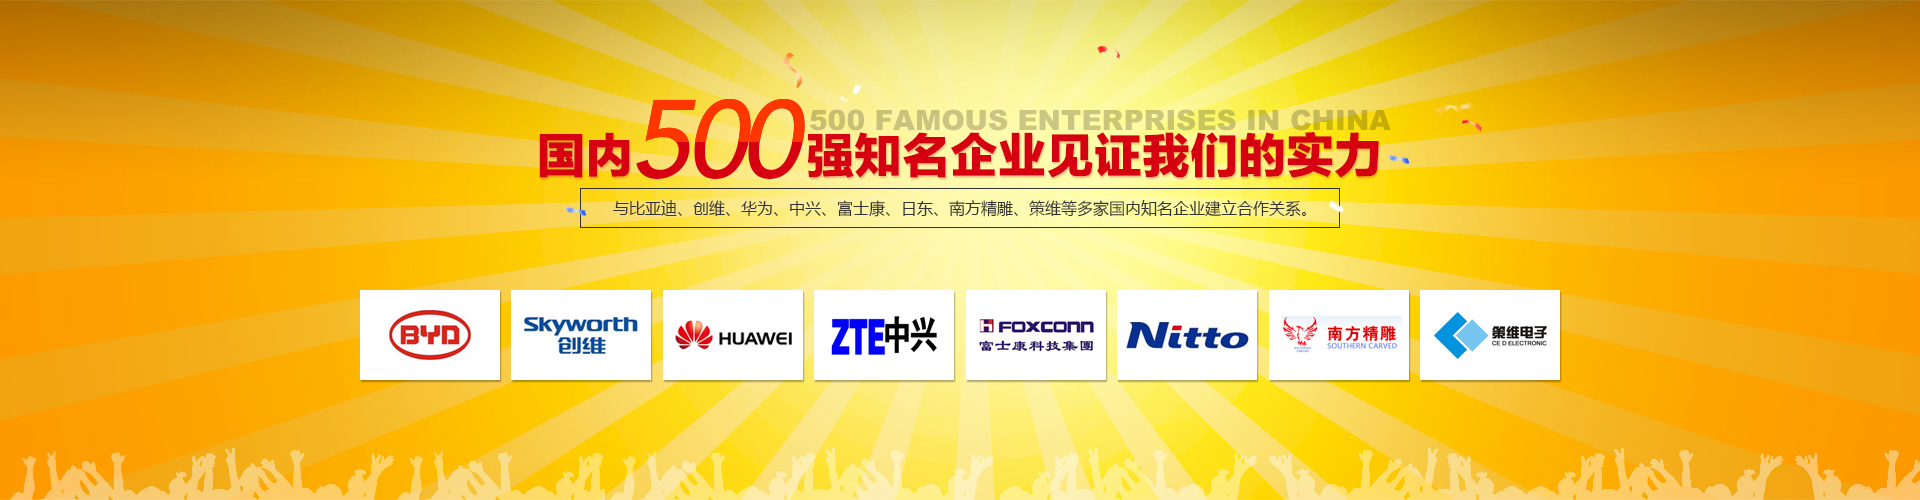 國(guo)內500強知名企業見證我們的實力